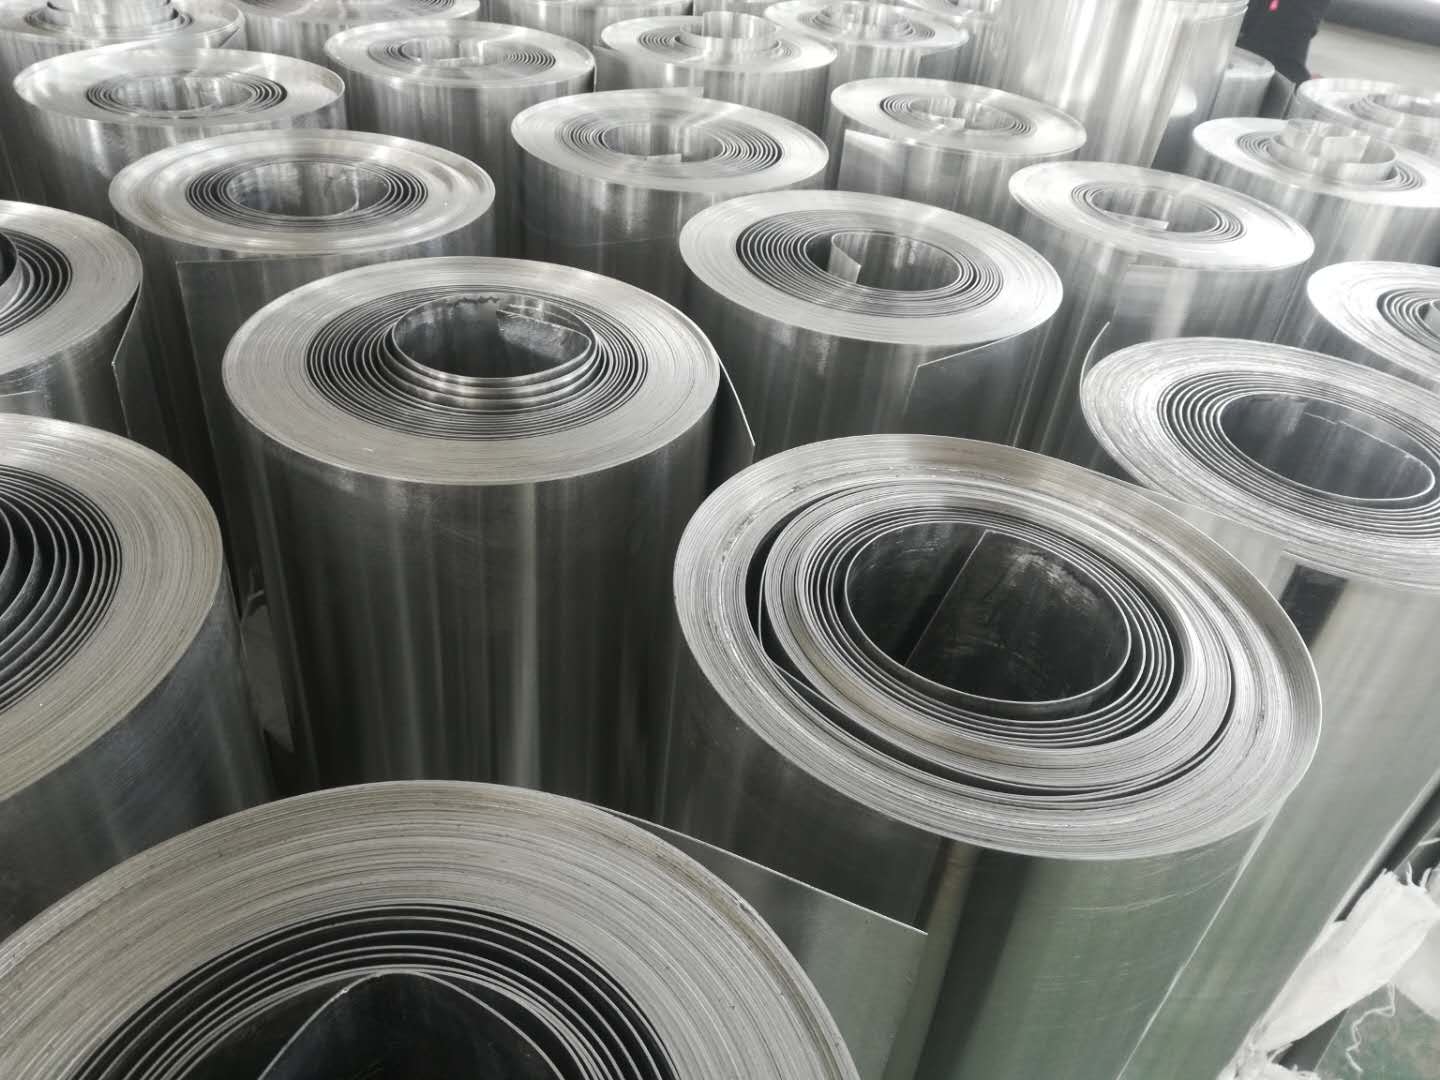 O material metálico usado para abas de latas de bebidas: é liga de alumínio?